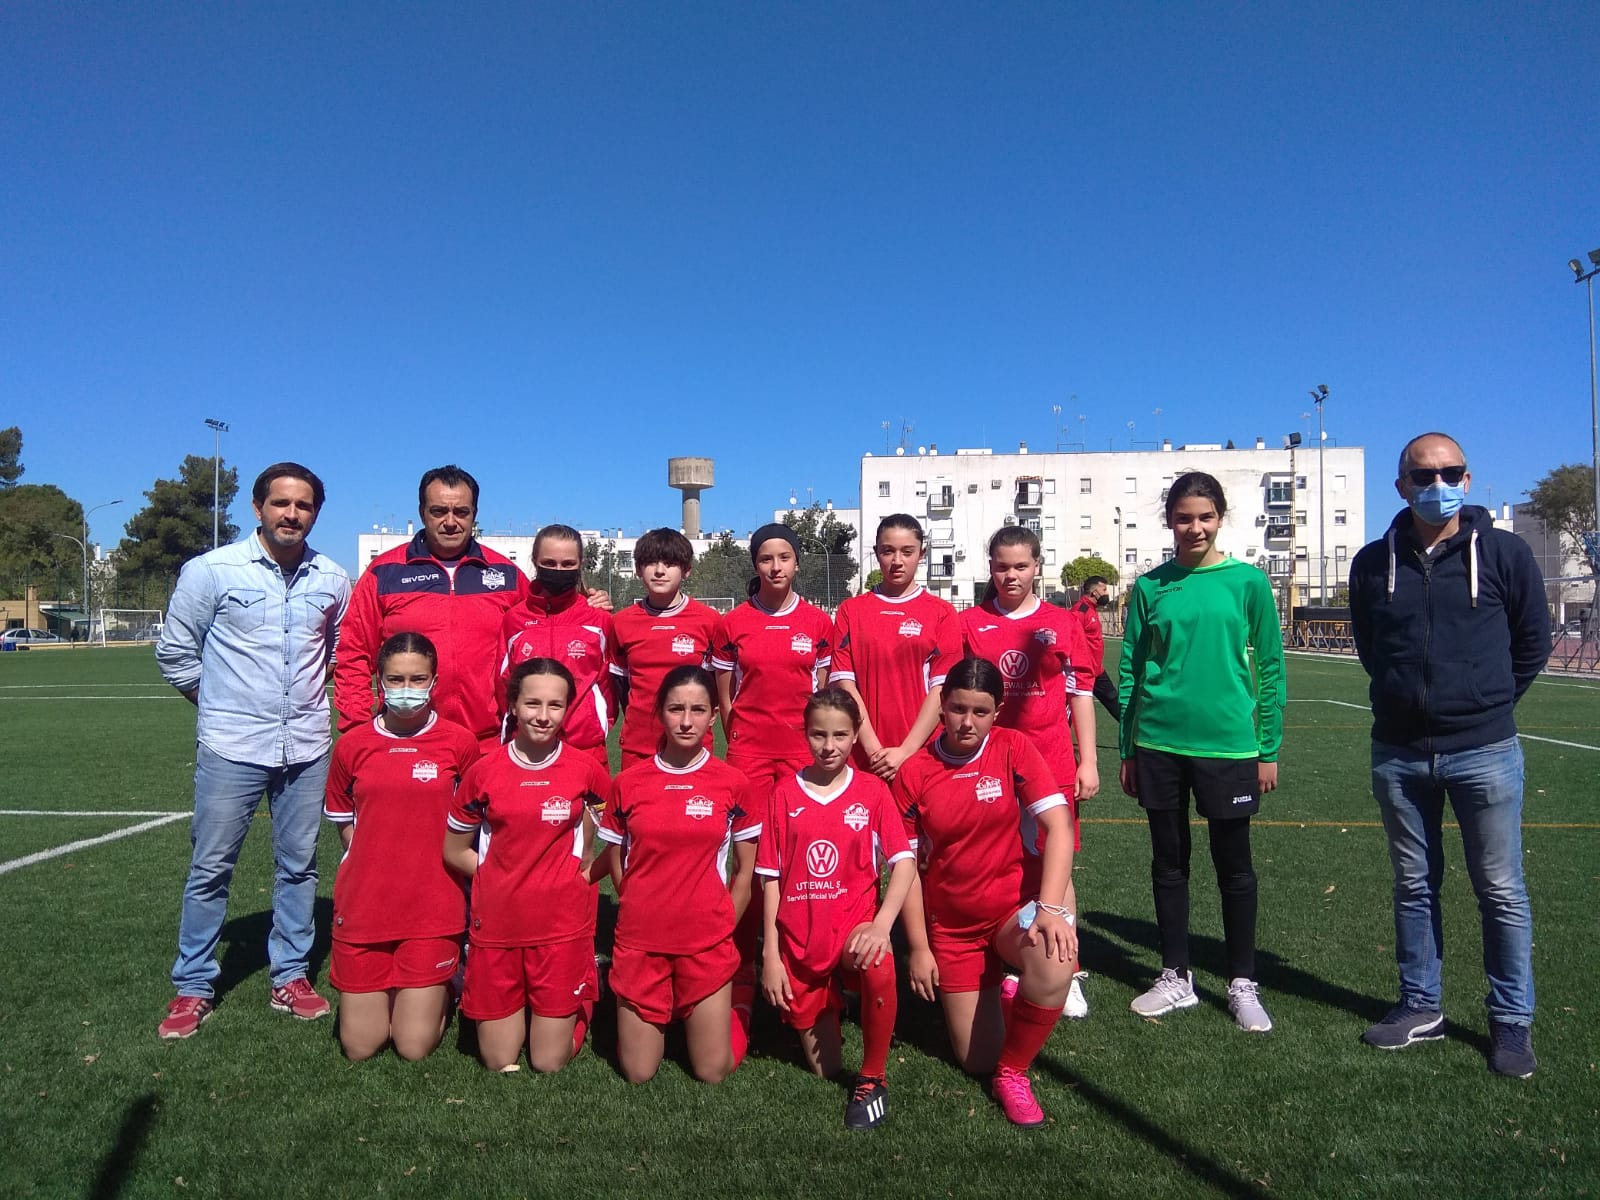 Las chicas de la Escuela Municipal que dirije Paco Martín consiguen 13 puntos de 15 en los últimos 5 encuentros